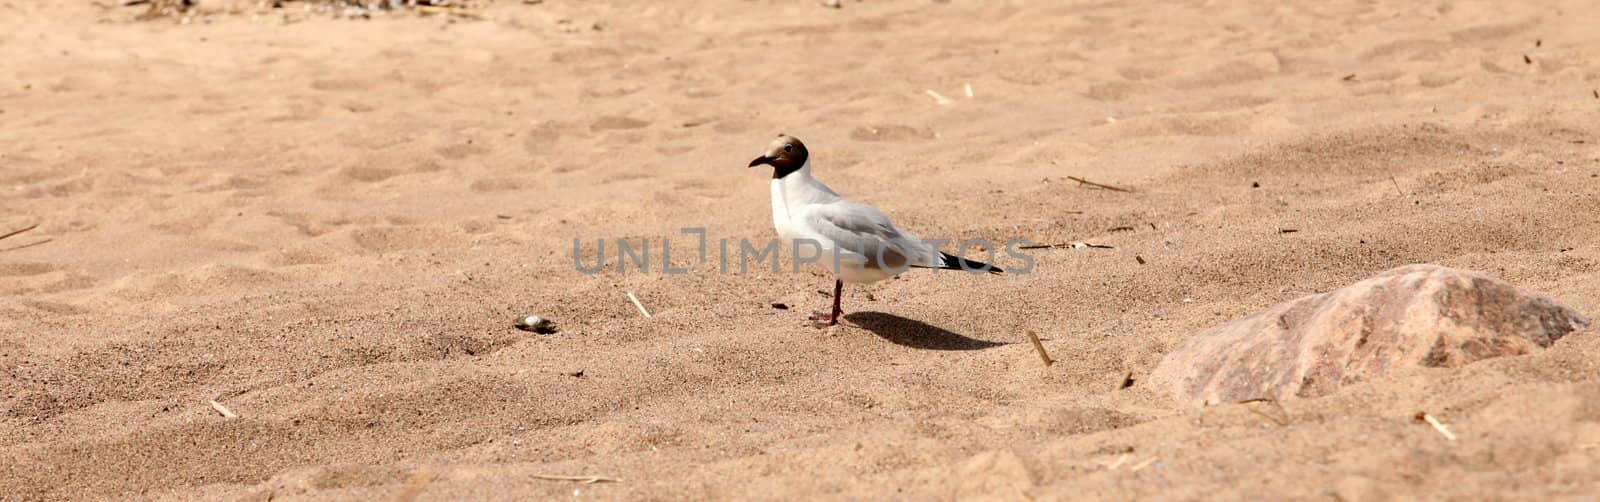 one bird is a seagull on a wild sandy beach